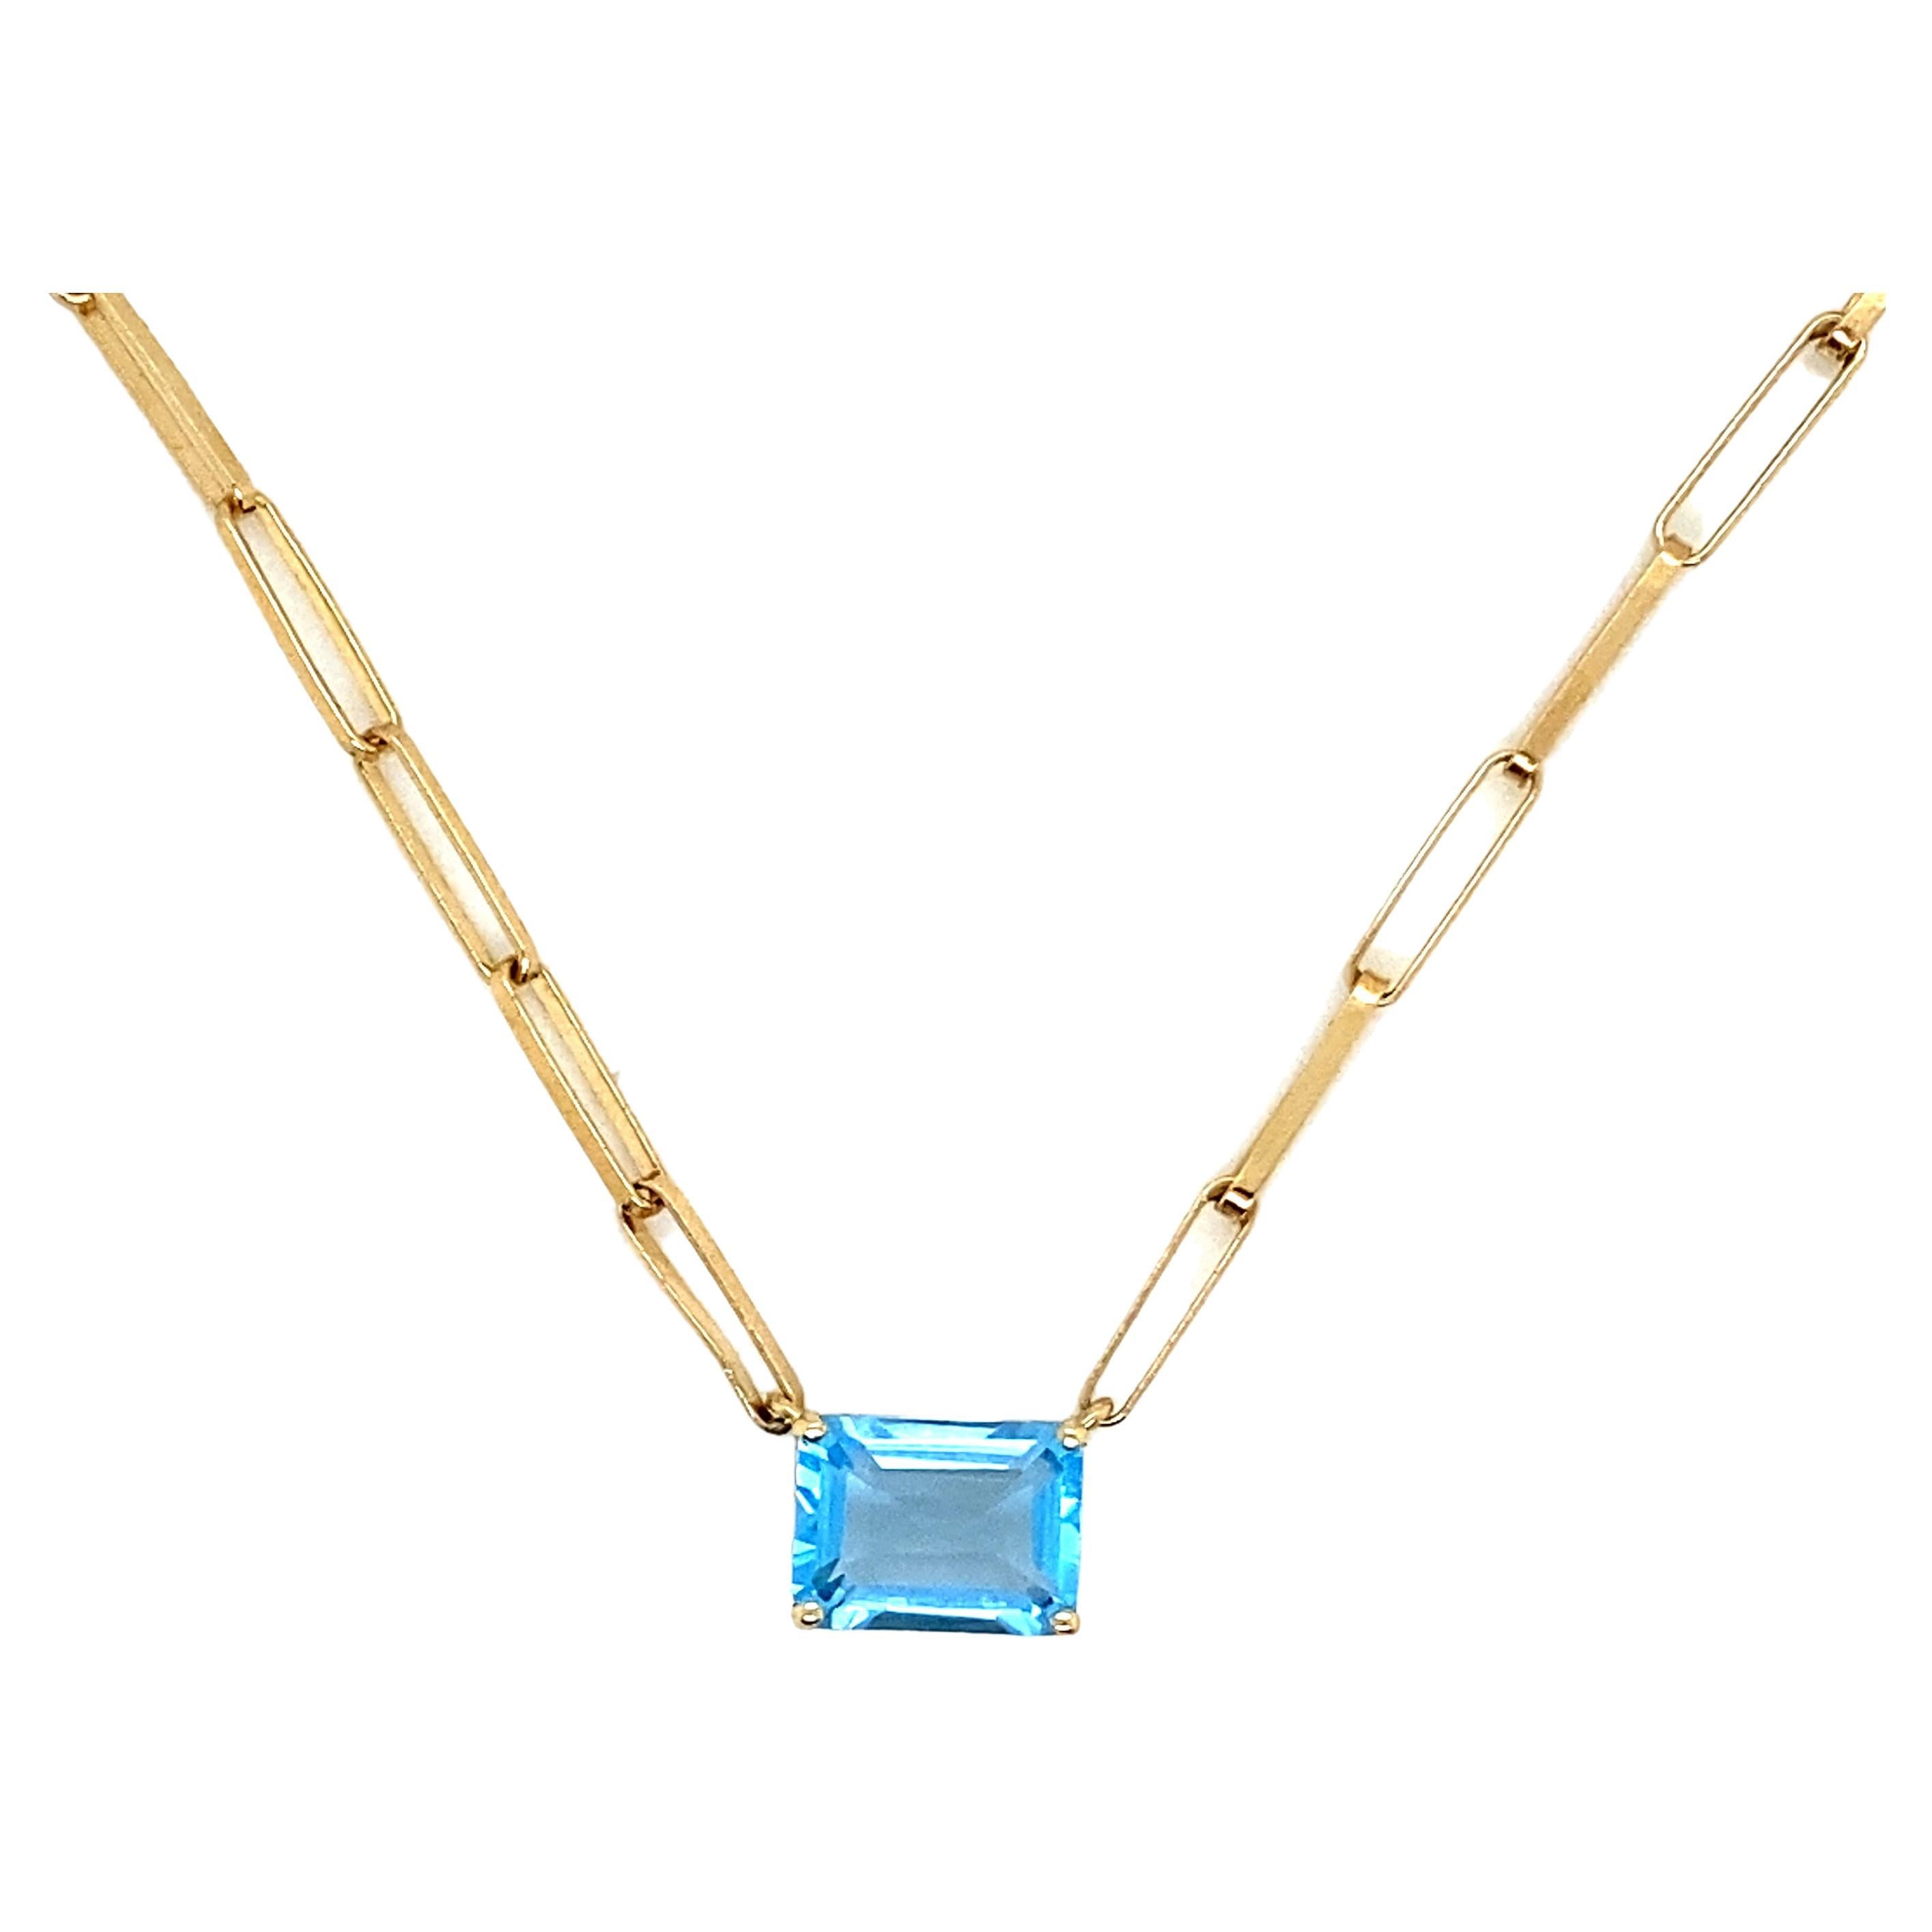 Straight Mech mit blauem Quarzschliff RPC Halskette Gelbgold 18 Karat 